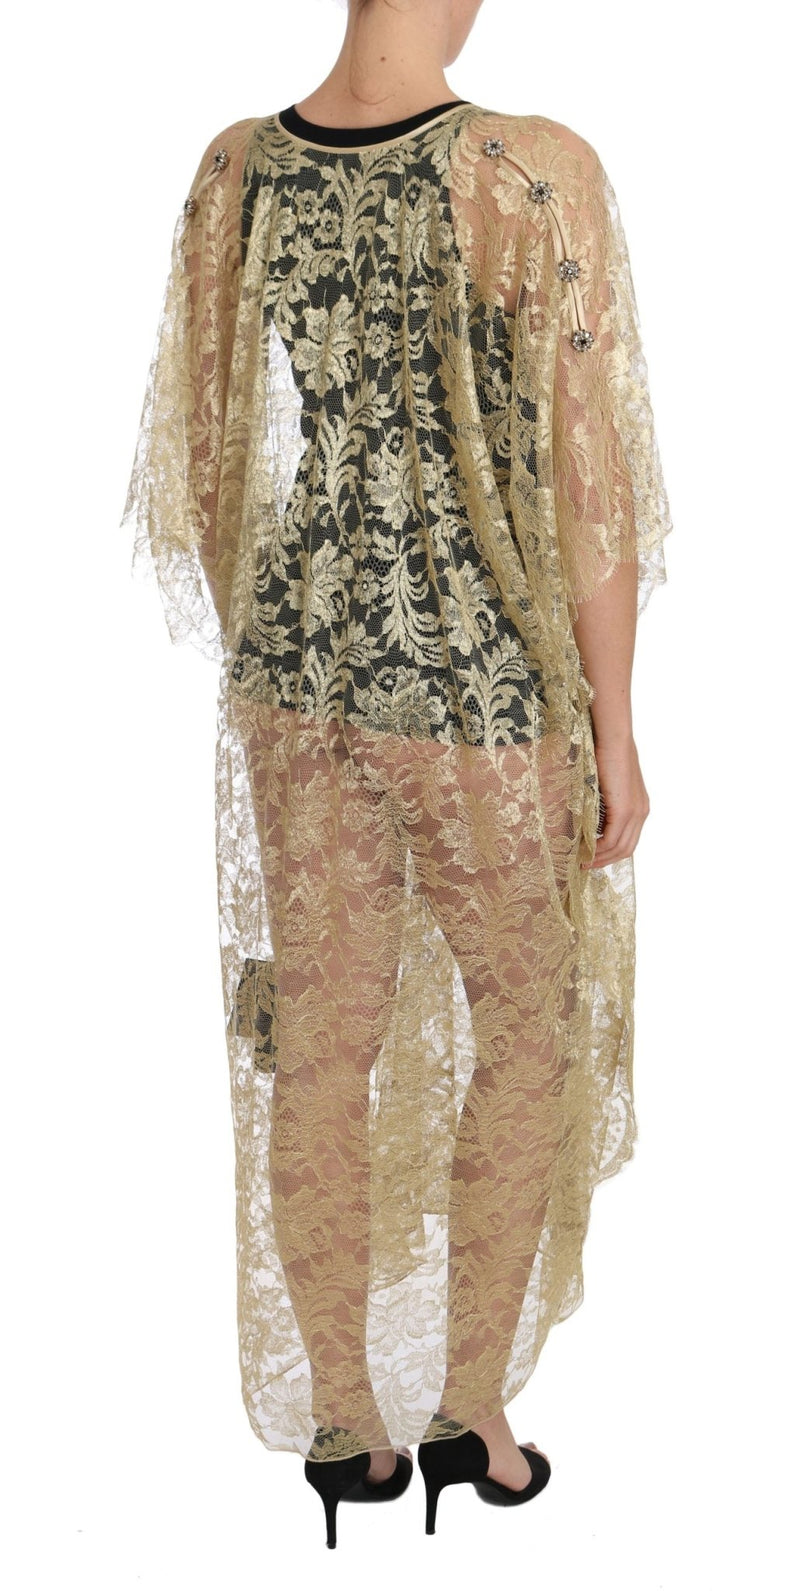 Gold Floral Lace Crystal Gown Cape Dress - Avaz Shop